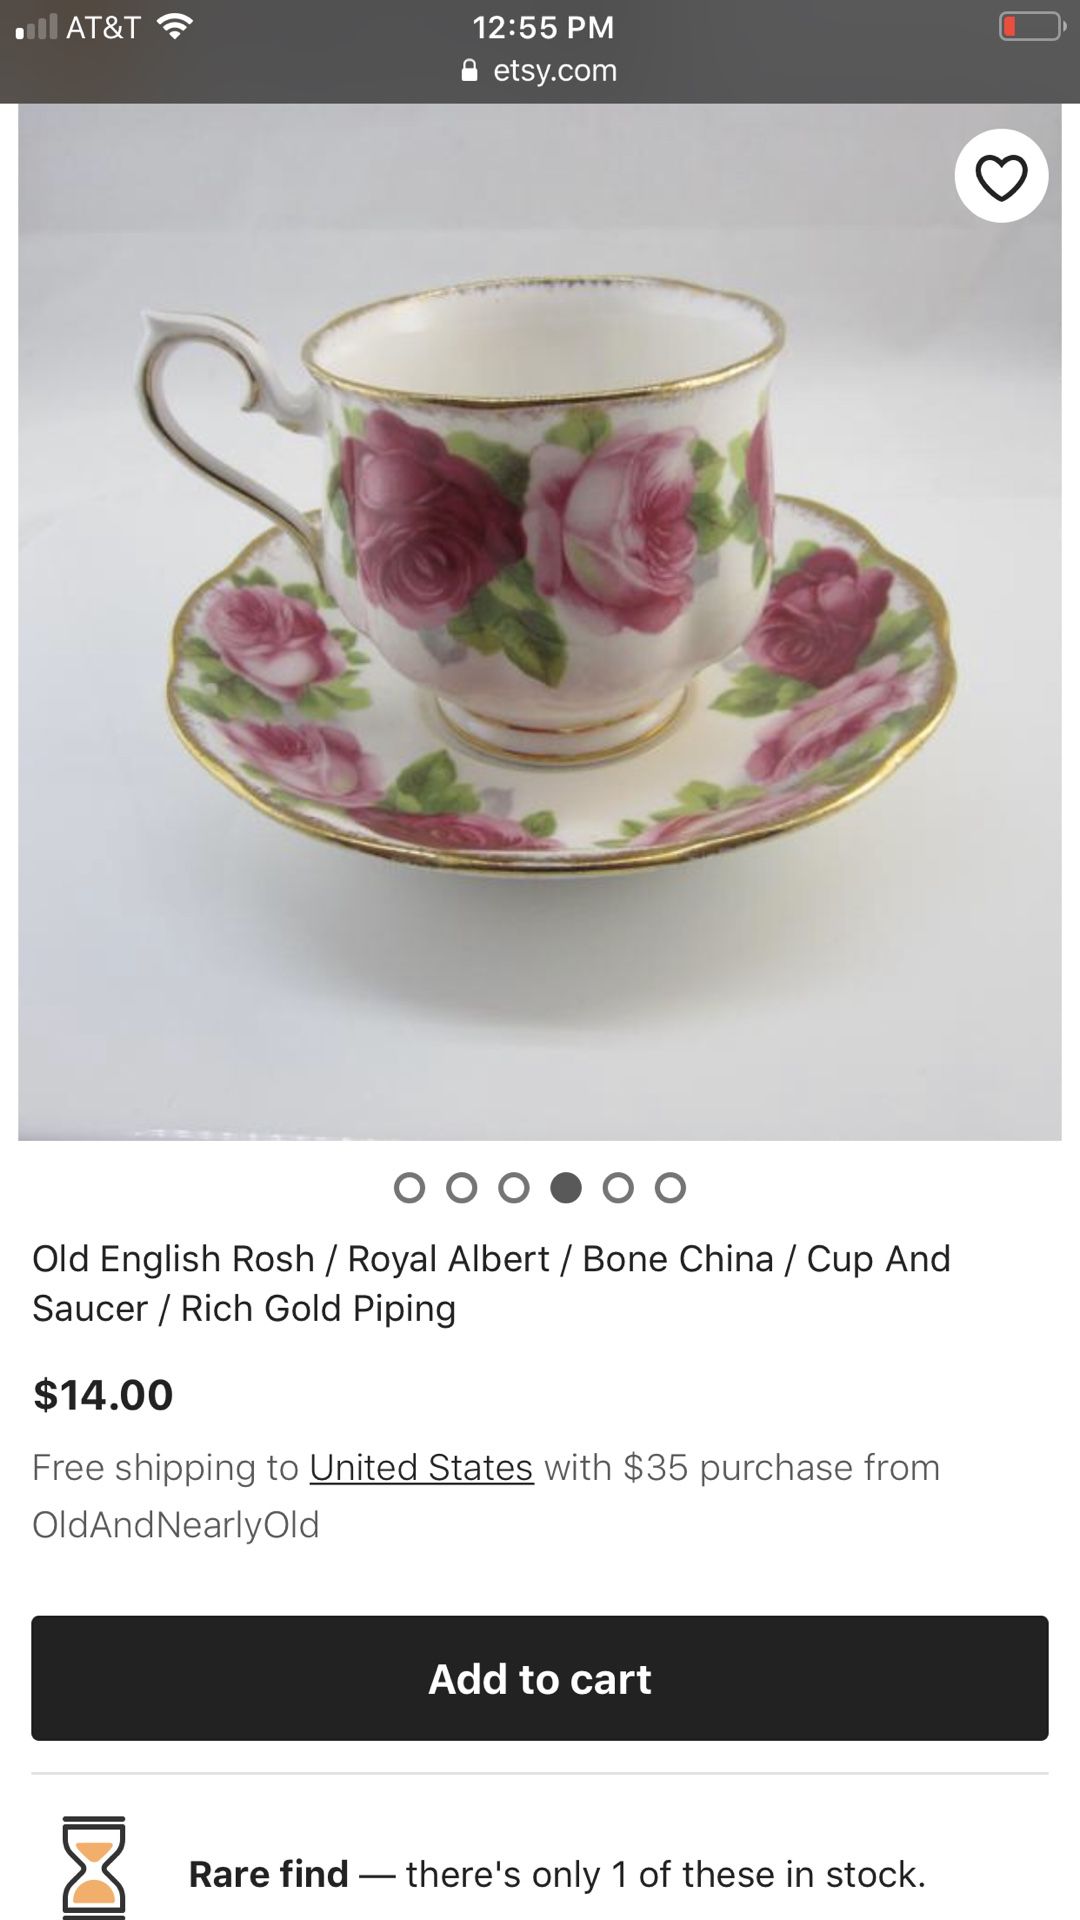 Old English Rosh/Royal Albert/Bone China/Cup and saucer/Rich gold Piping